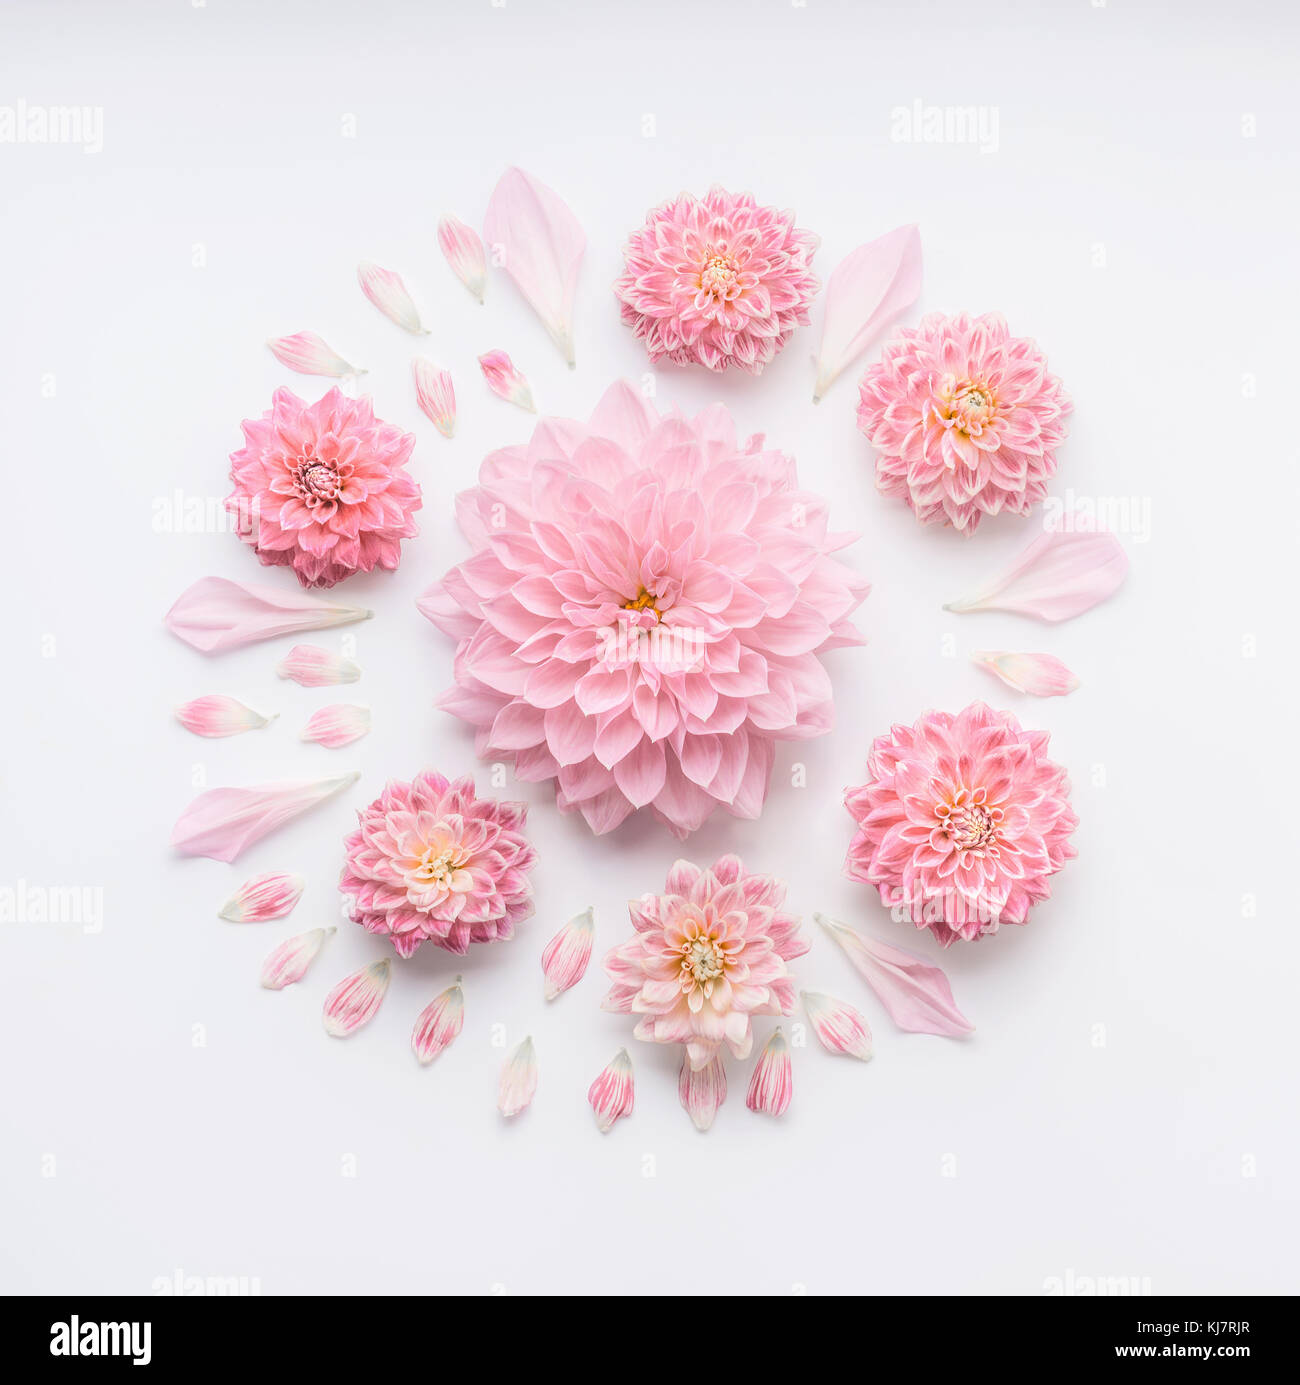 Round rosa pallido composizione di fiori con petali di colore bianco su  sfondo per il desktop, piatto di laici che, vista dall'alto. creative  layout floreali o biglietto di auguri per le mamme